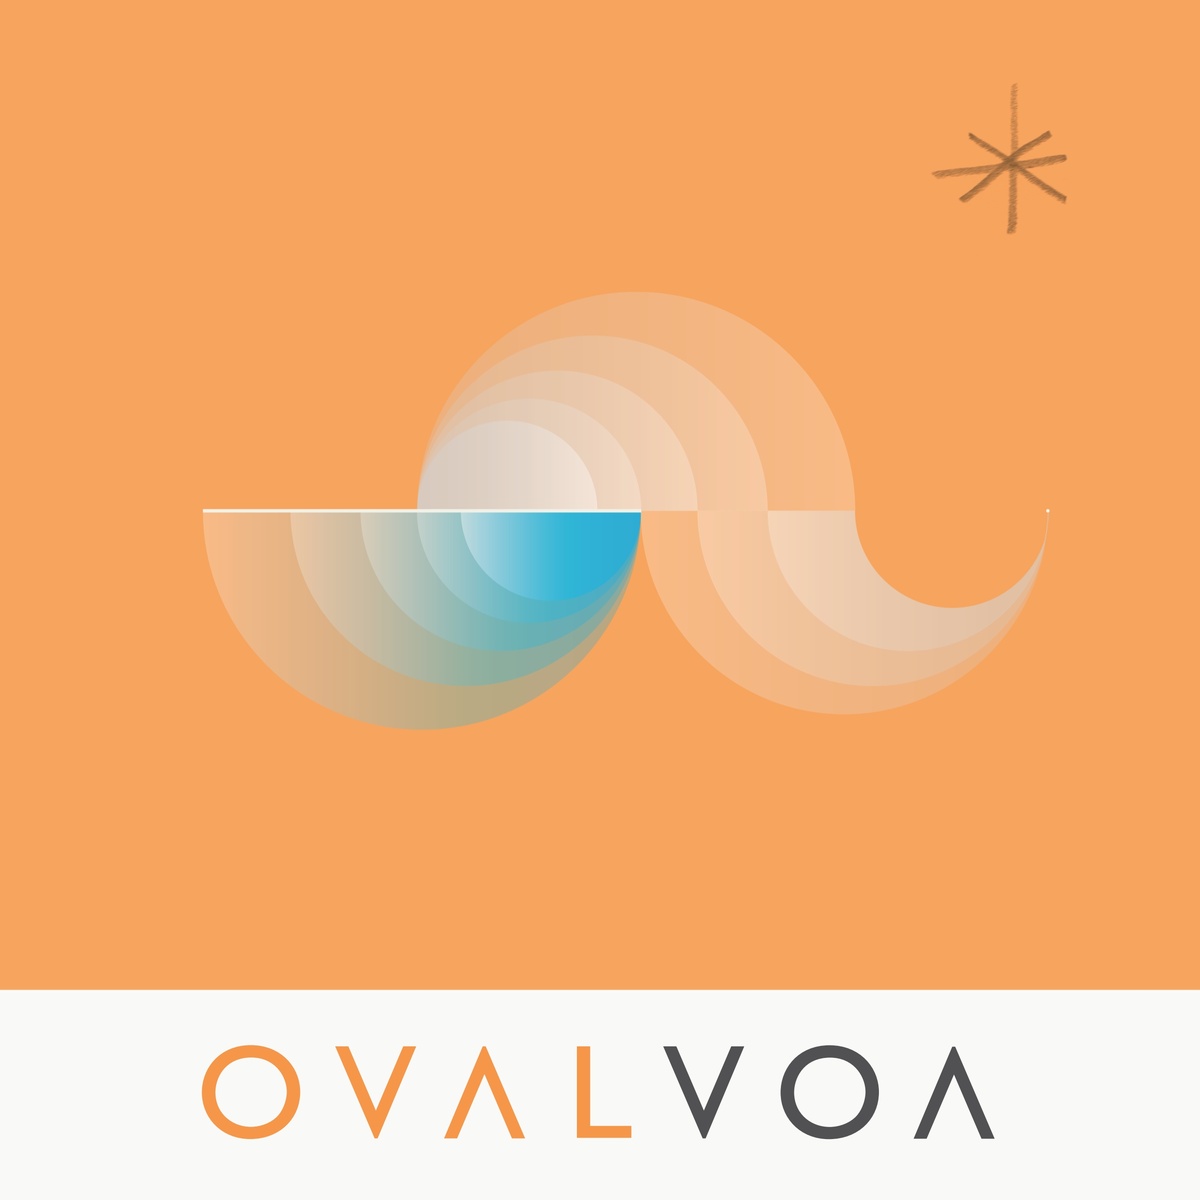 Oval - 'VOA'